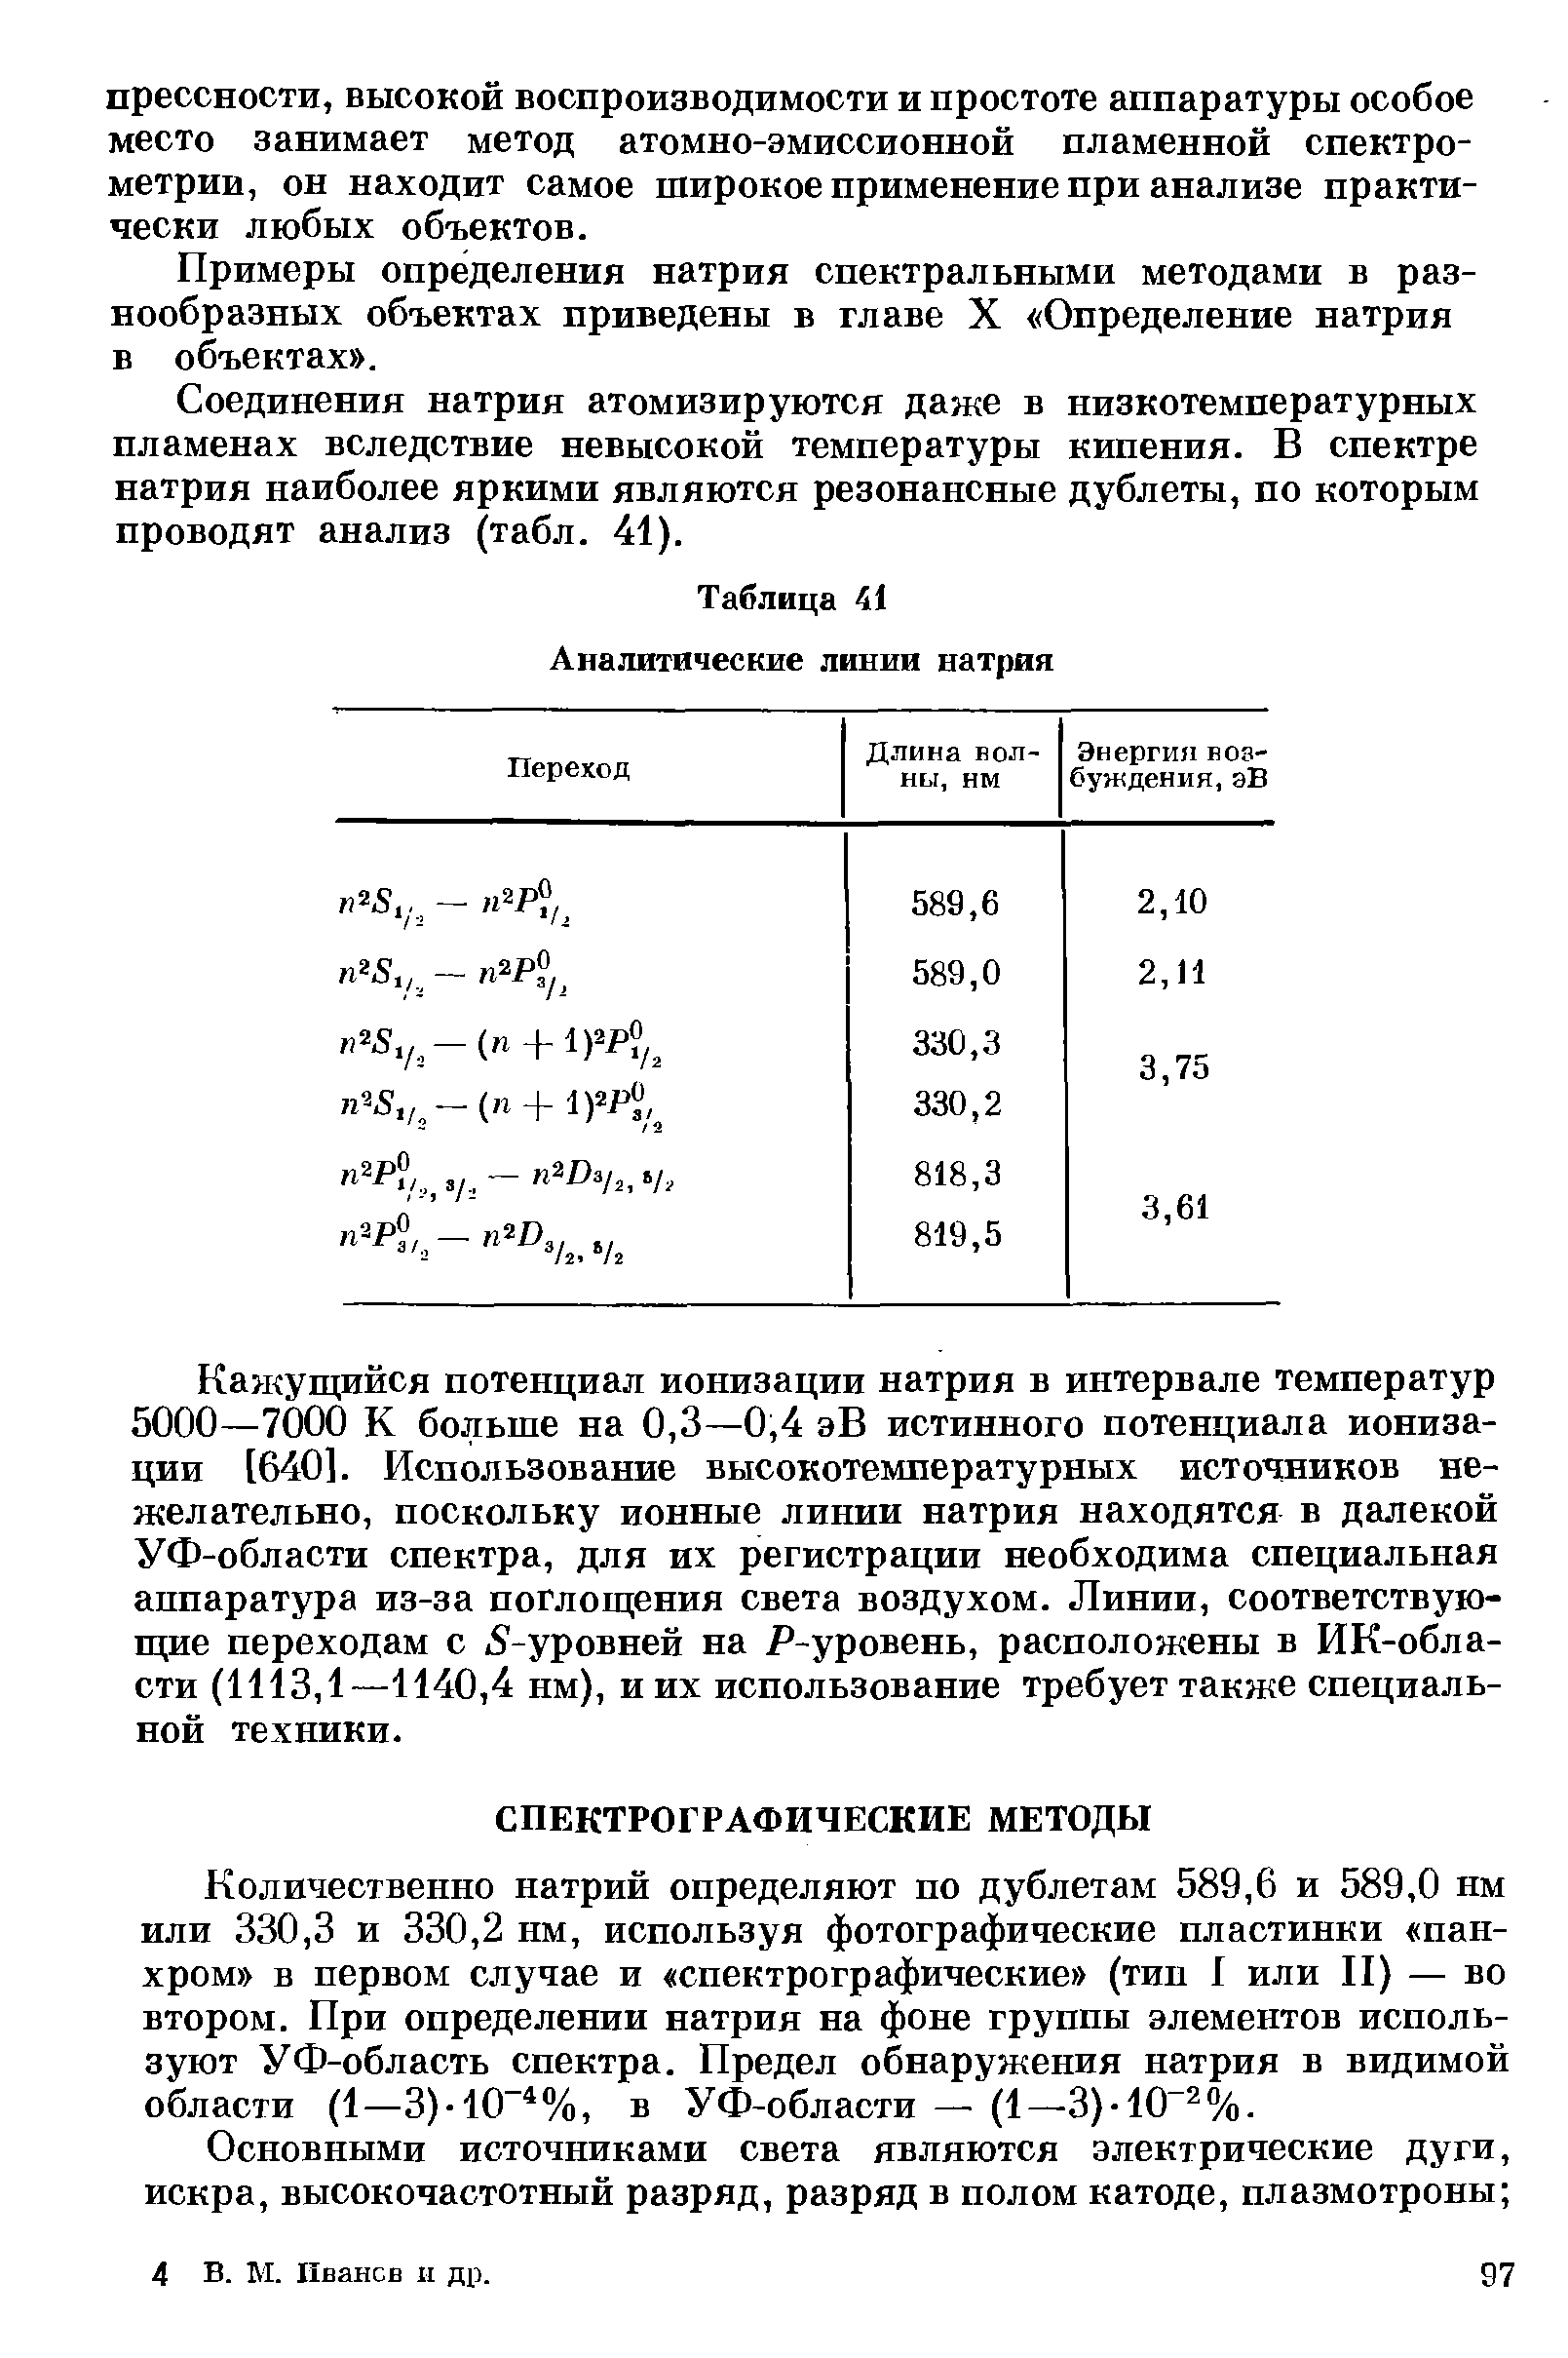 Примеры определения натрия спектральными методами в разнообразных объектах приведены в главе X Определение натрия в объектах .